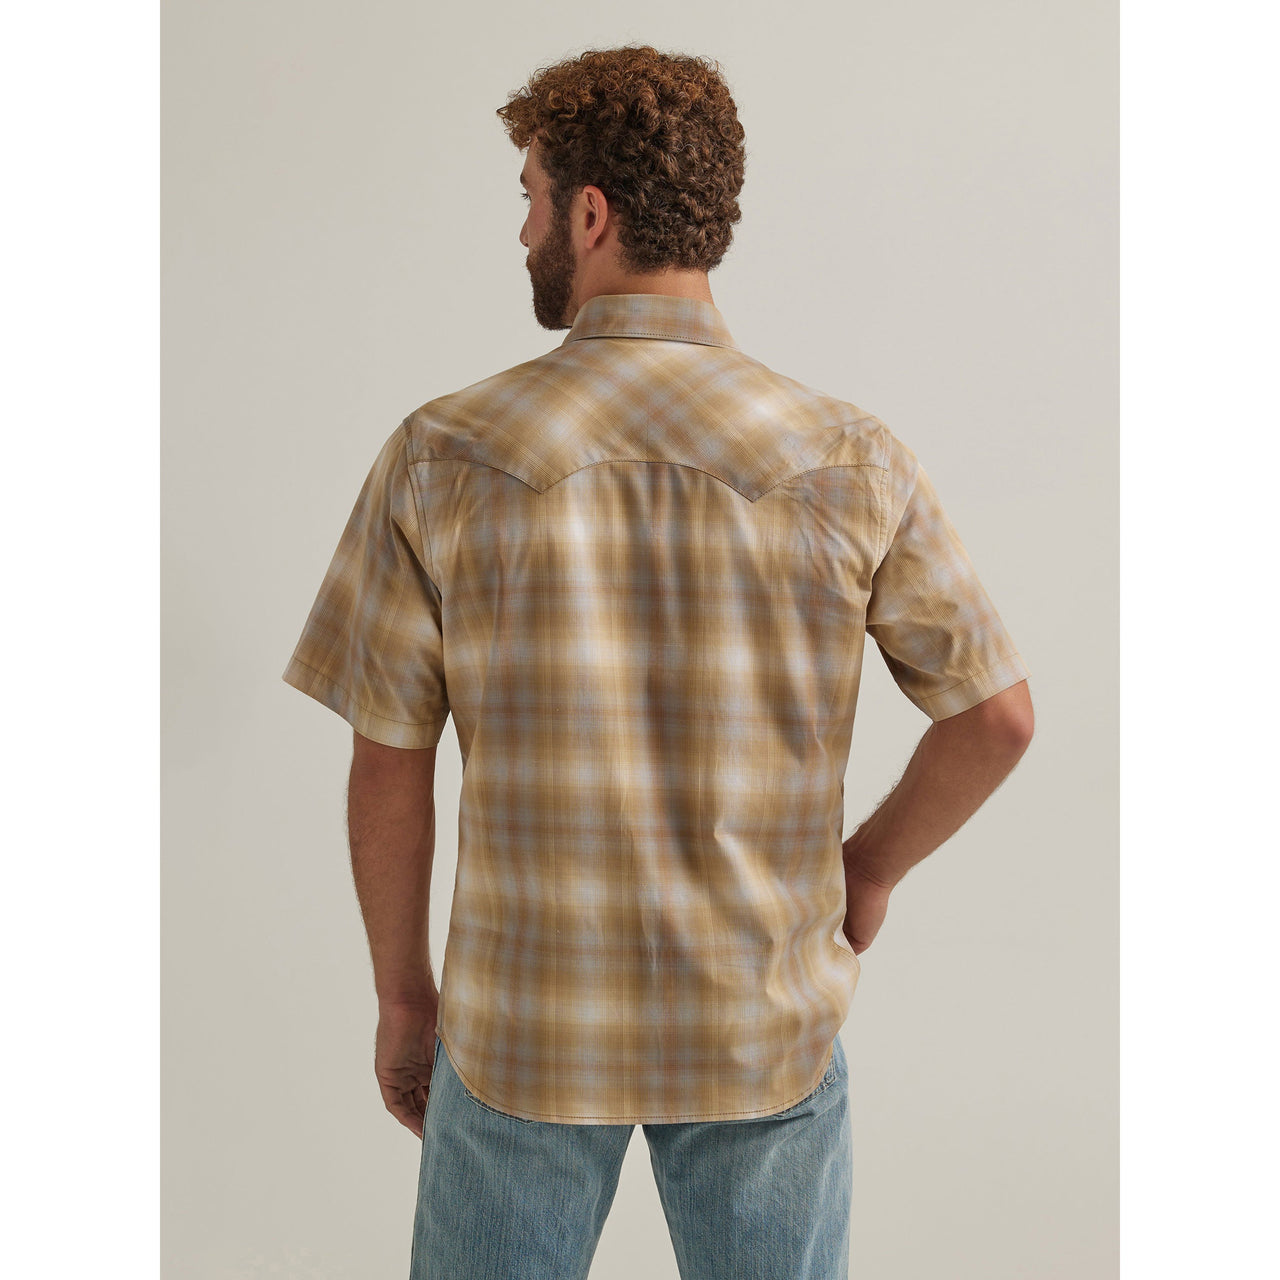 Wrangler Men's Retro Modern Fit Short Sleeve Plaid Shirt - Sand